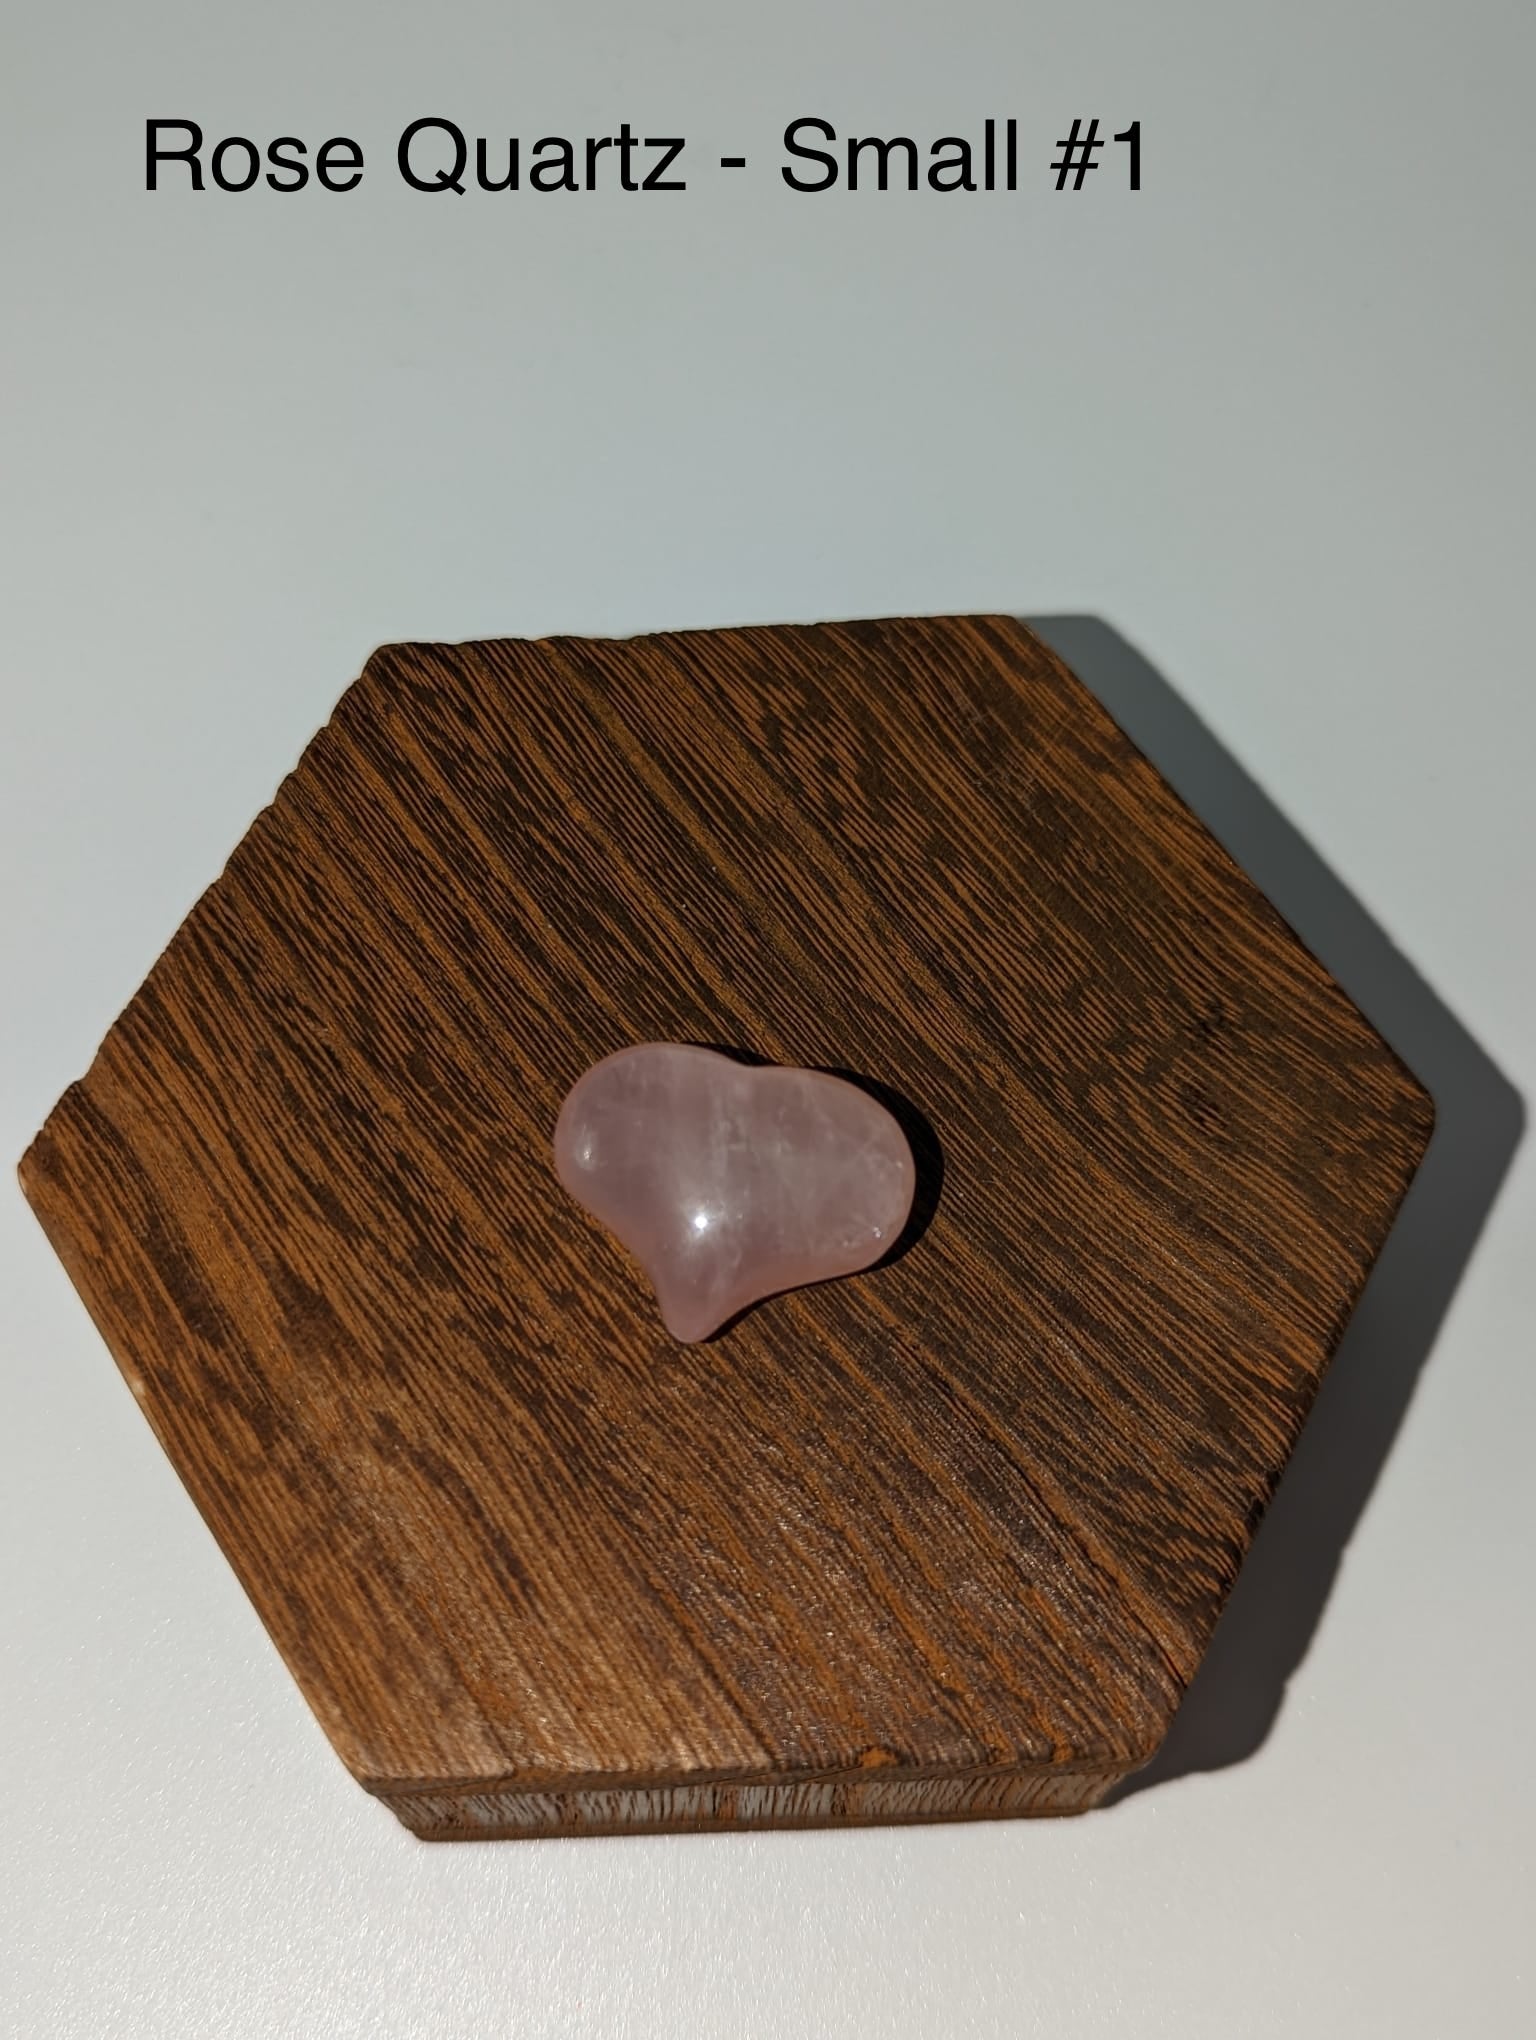 Rose Quartz Meditation Stones